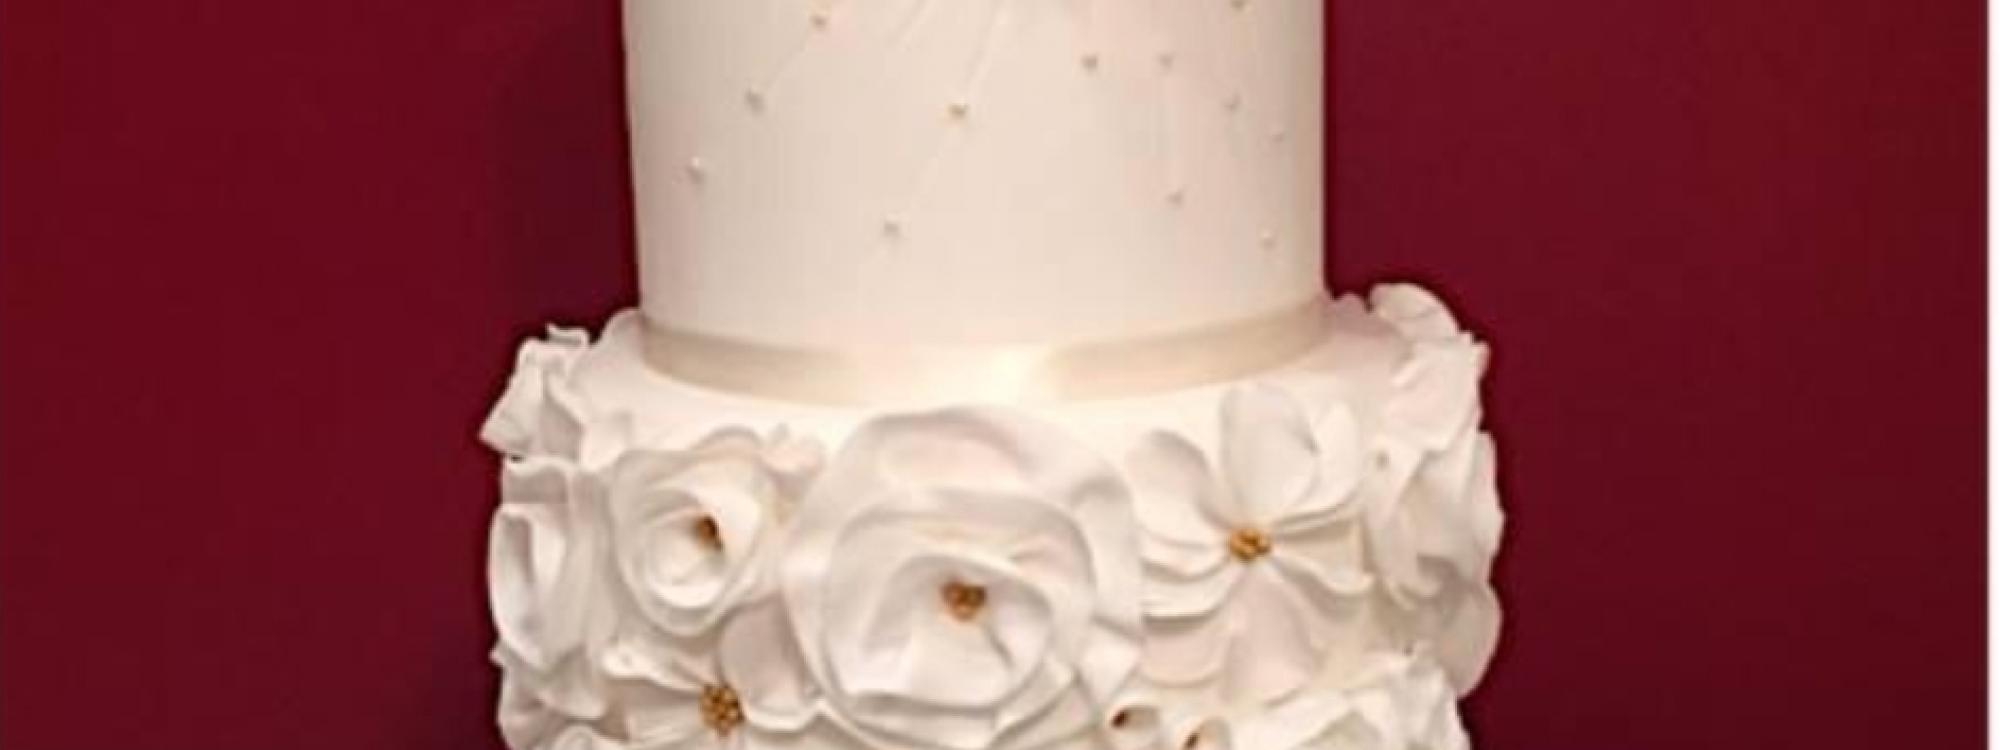 PEPPE LEOTTA PASTICCERIA ALTA FORMAZIONE CORSI CONPAIT-SICILIA SCUOLA CAKE DESIGN WEDDING CAKE